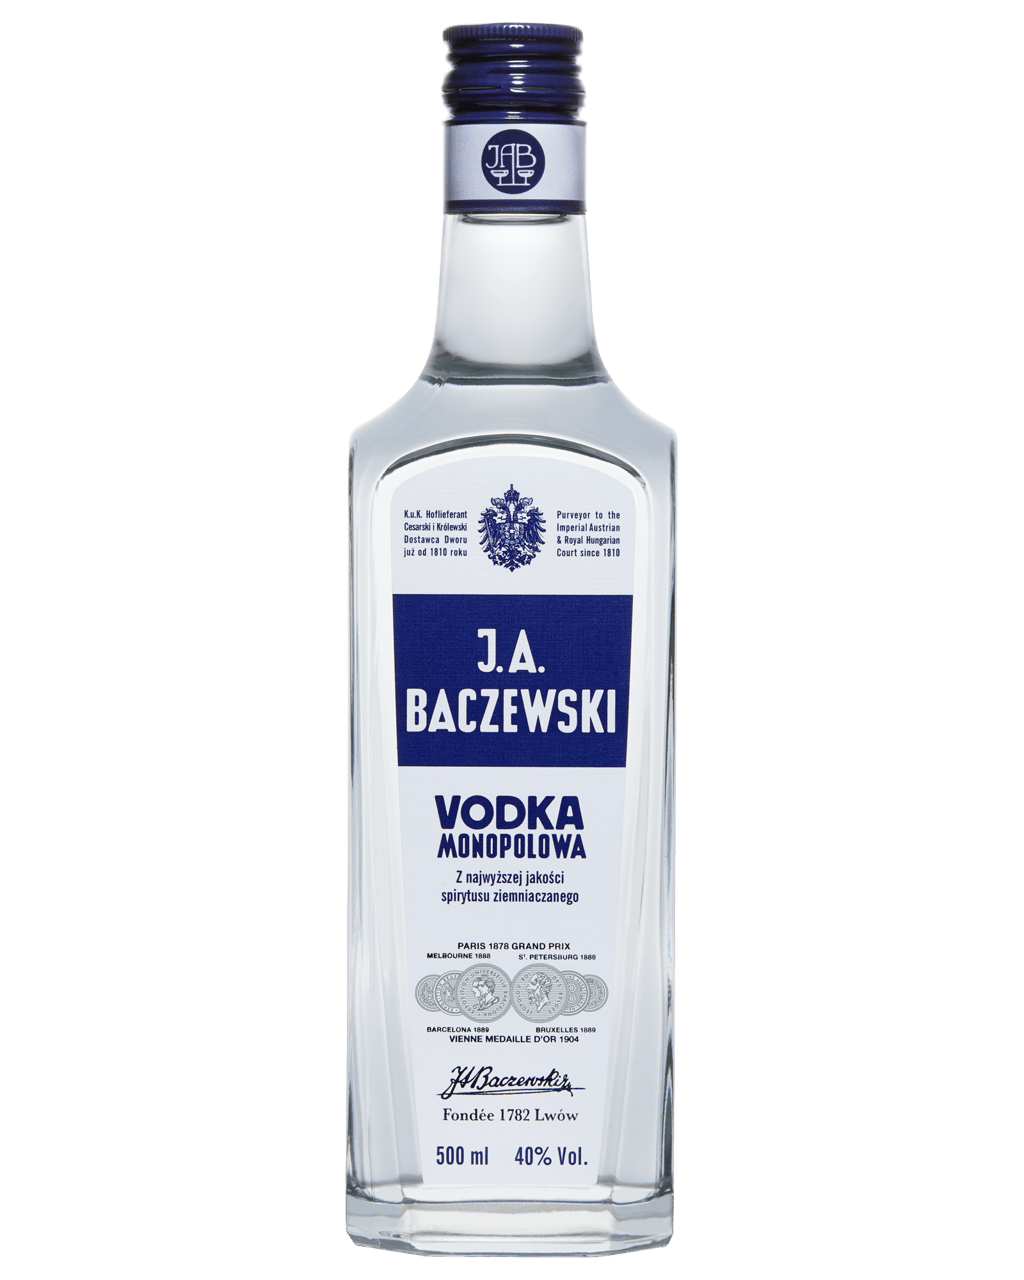 J.A. Baczewski Vodka Monopolowa 700mL